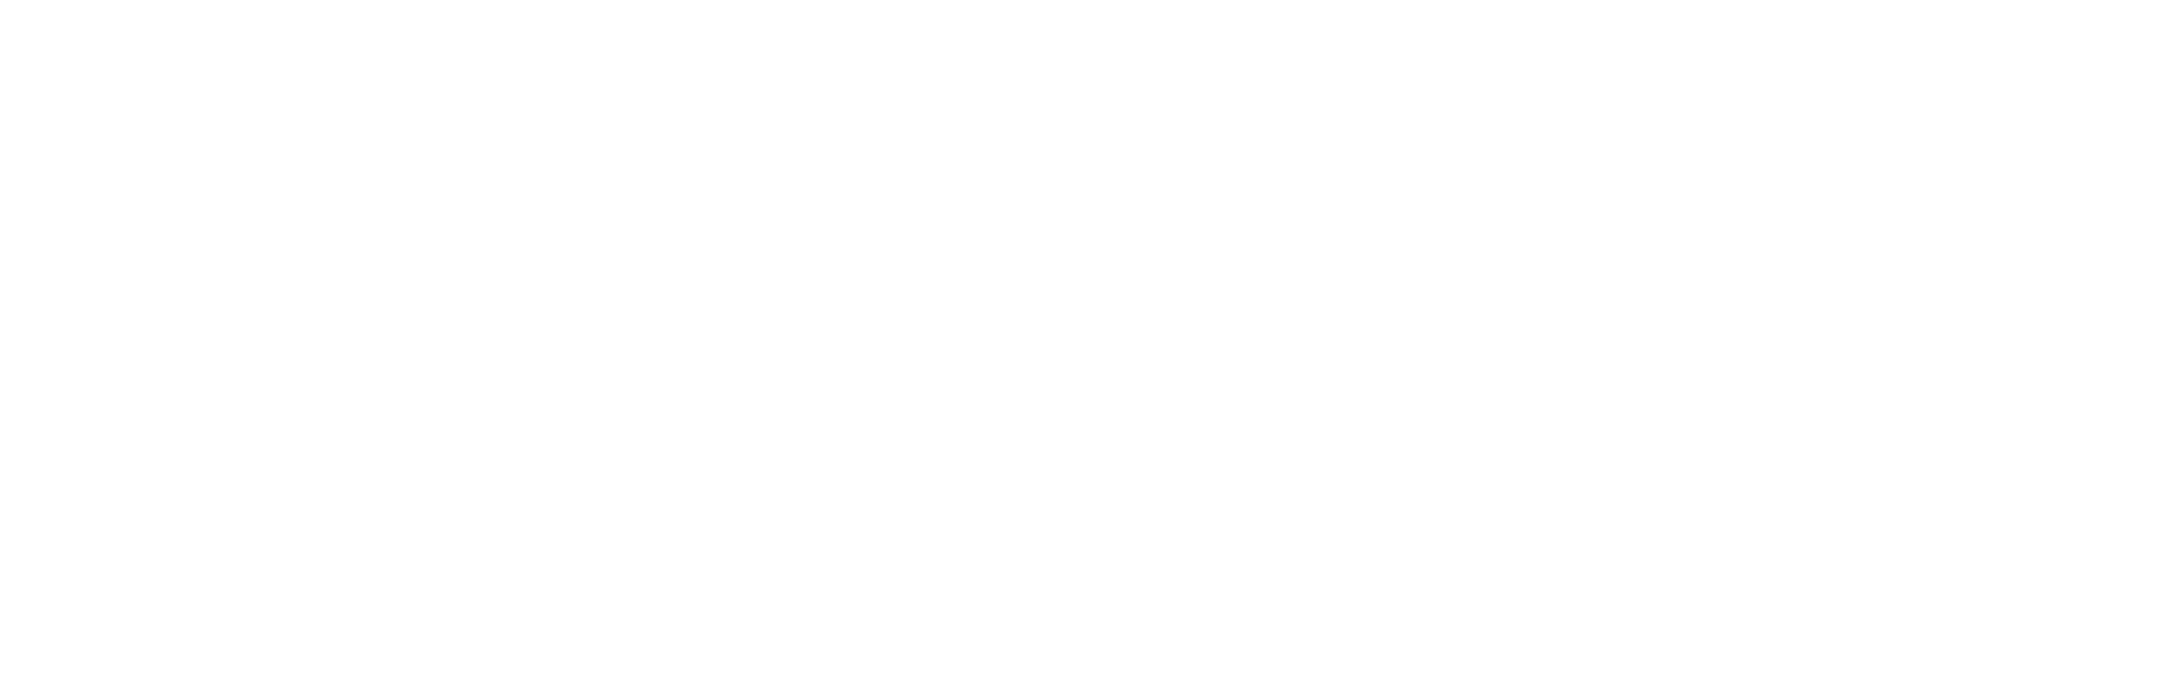 Eikon Research